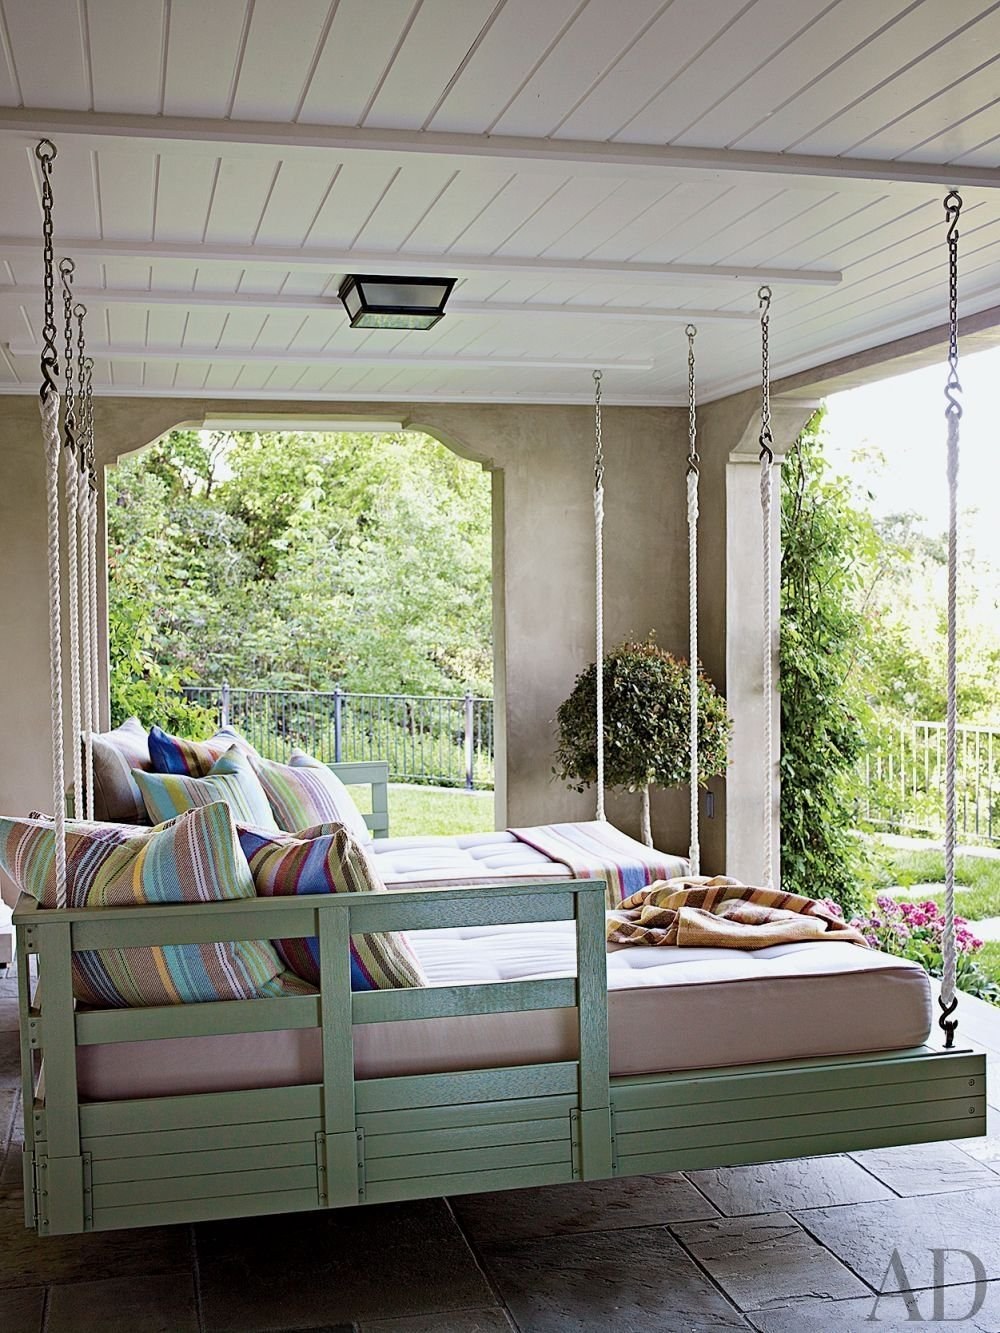 Подвесная кровать своими руками – райское место для отдыха в вашей квартире!